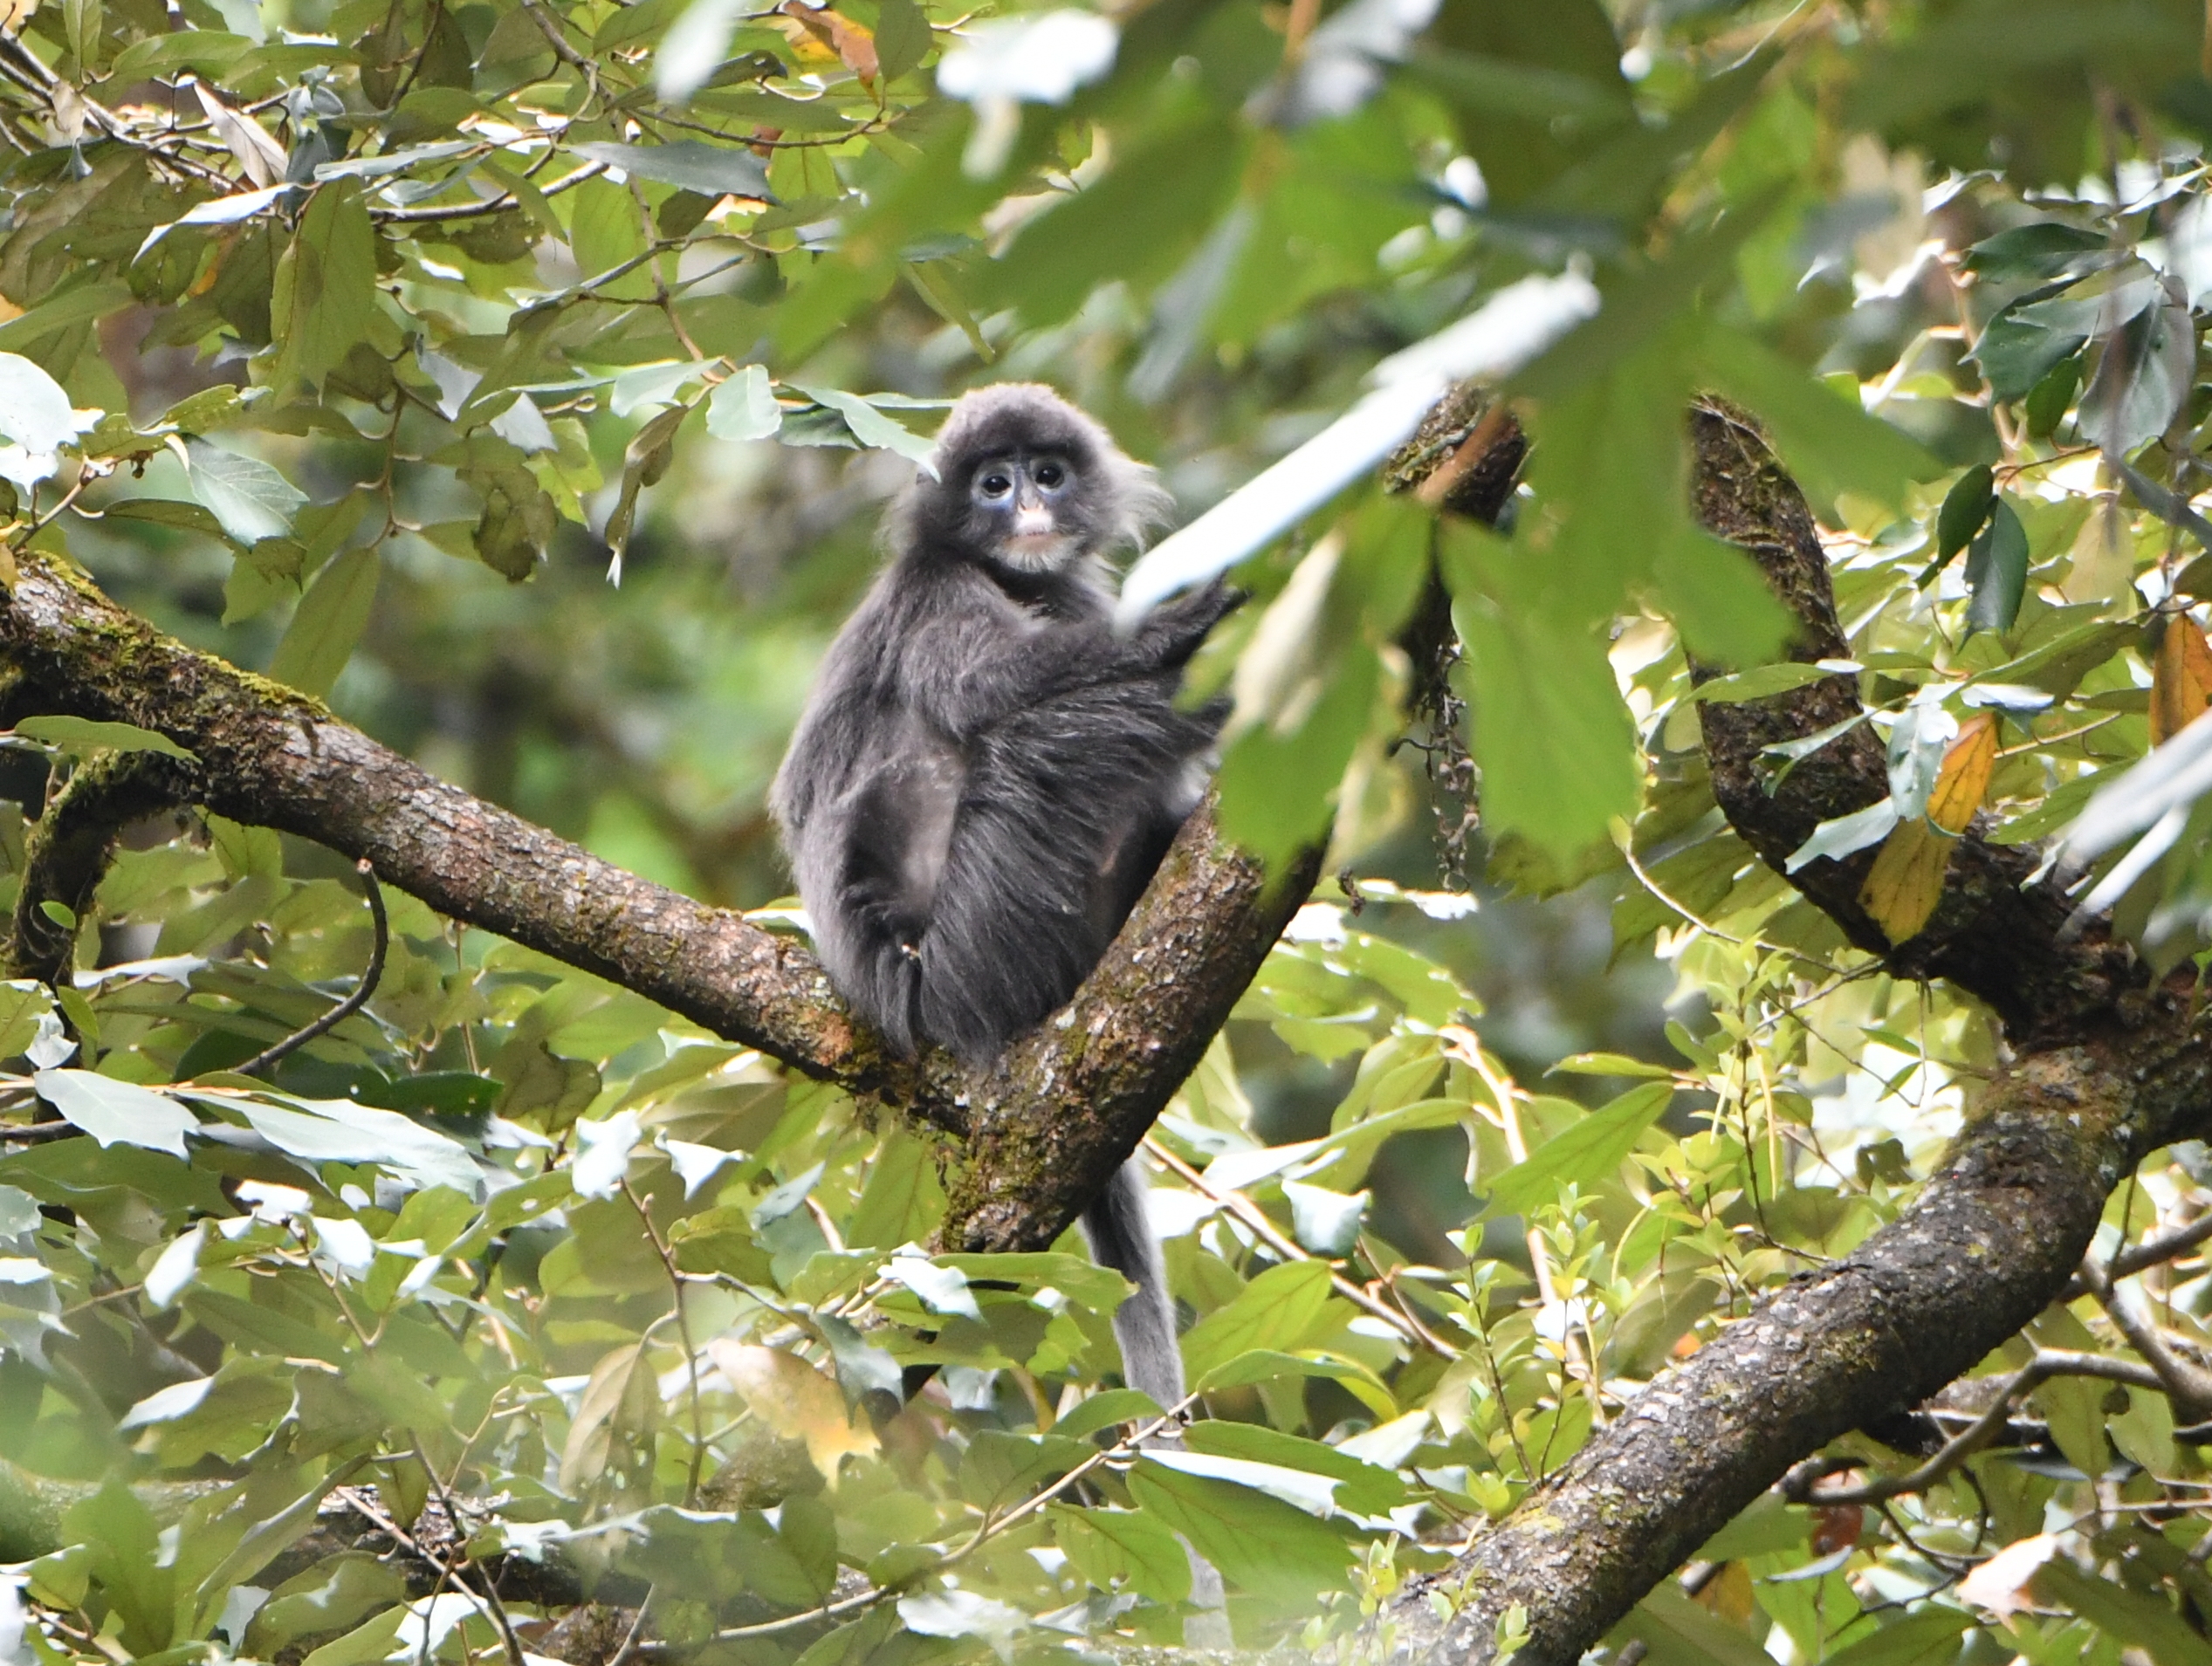 Establishing the rural-community-based nature reserve for Phayre's leaf monkey